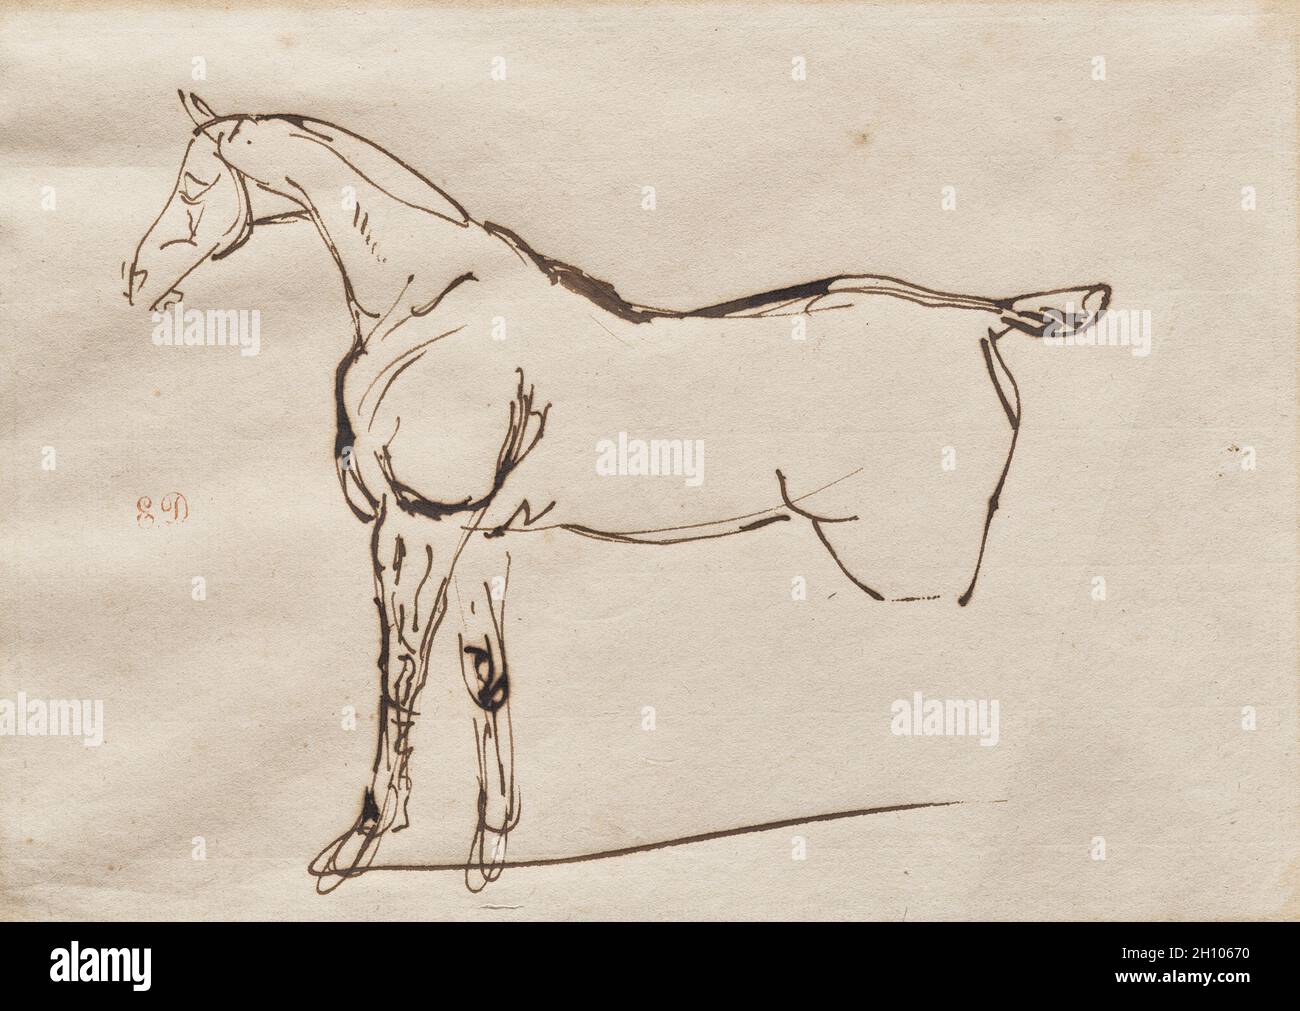 Étude d'un cheval, c.1820–30.Eugène Delacroix (français, 1798-1863).Encre sur papier; image : 17.1 x 24 cm (6 3/4 x 9 7/16 po.); feuille : 21 x 28.2 cm (8 1/4 x 11 1/8 po.).Eugène Delacroix a représenté plusieurs fois des chevaux tout au long de sa carrière, visitant des écuries pour observer les animaux au repos et en mouvement.Cette feuille est probablement un exemple de la vie.Delacroix esquissait la forme du cheval sans serrer, se concentrant sur la tension de ses jambes avant et laissant le reste de son corps rendu sans serrer.Par de tels exercices, l'artiste espérait finalement maîtriser ce sujet. Banque D'Images